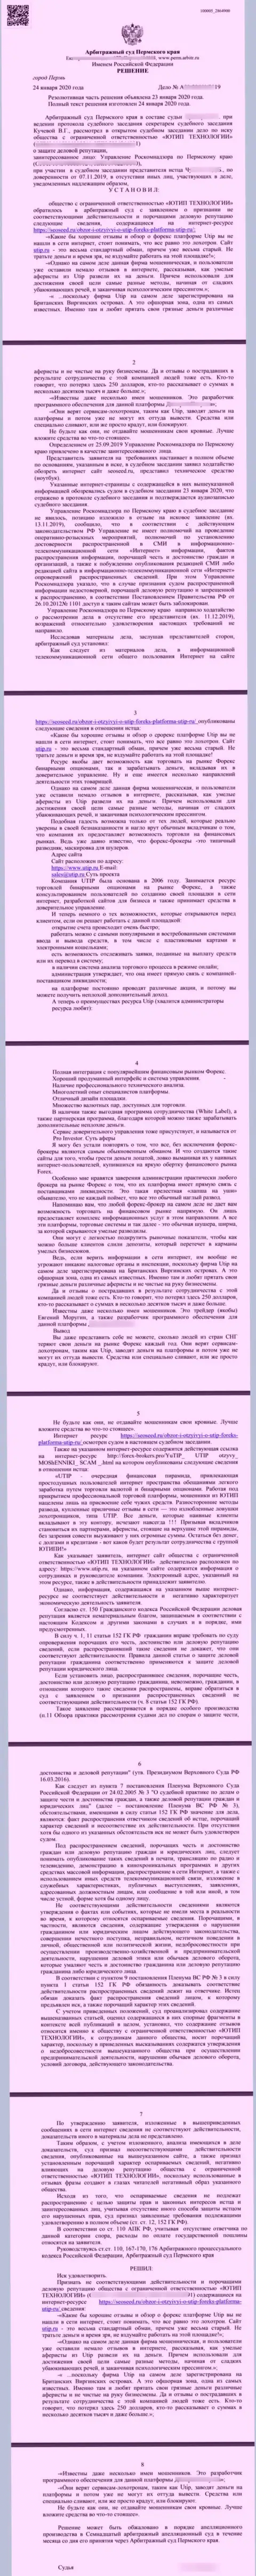 Иск мошенников UTIP Ru, который был удовлетворен самым справедливым судом в мире